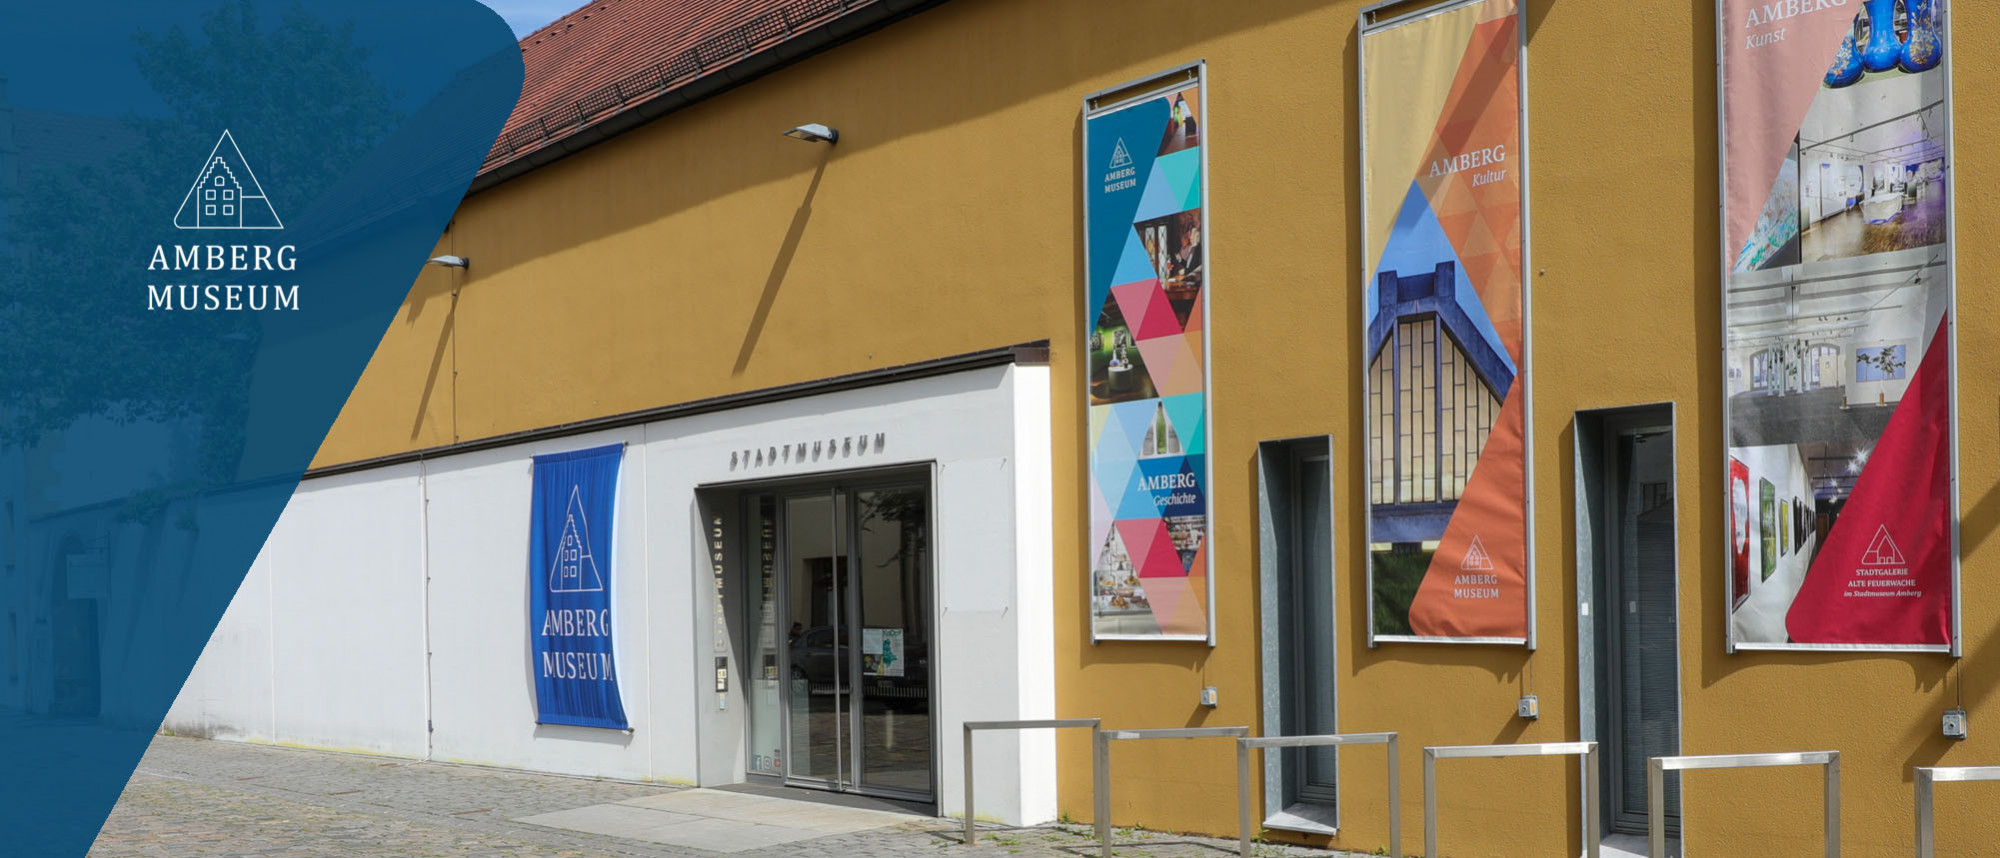 Außenansicht vom Stadtmuseum Amberg mit Eingangstür, einer bunten Fahne links und drei bunten Bannern rechts davon.